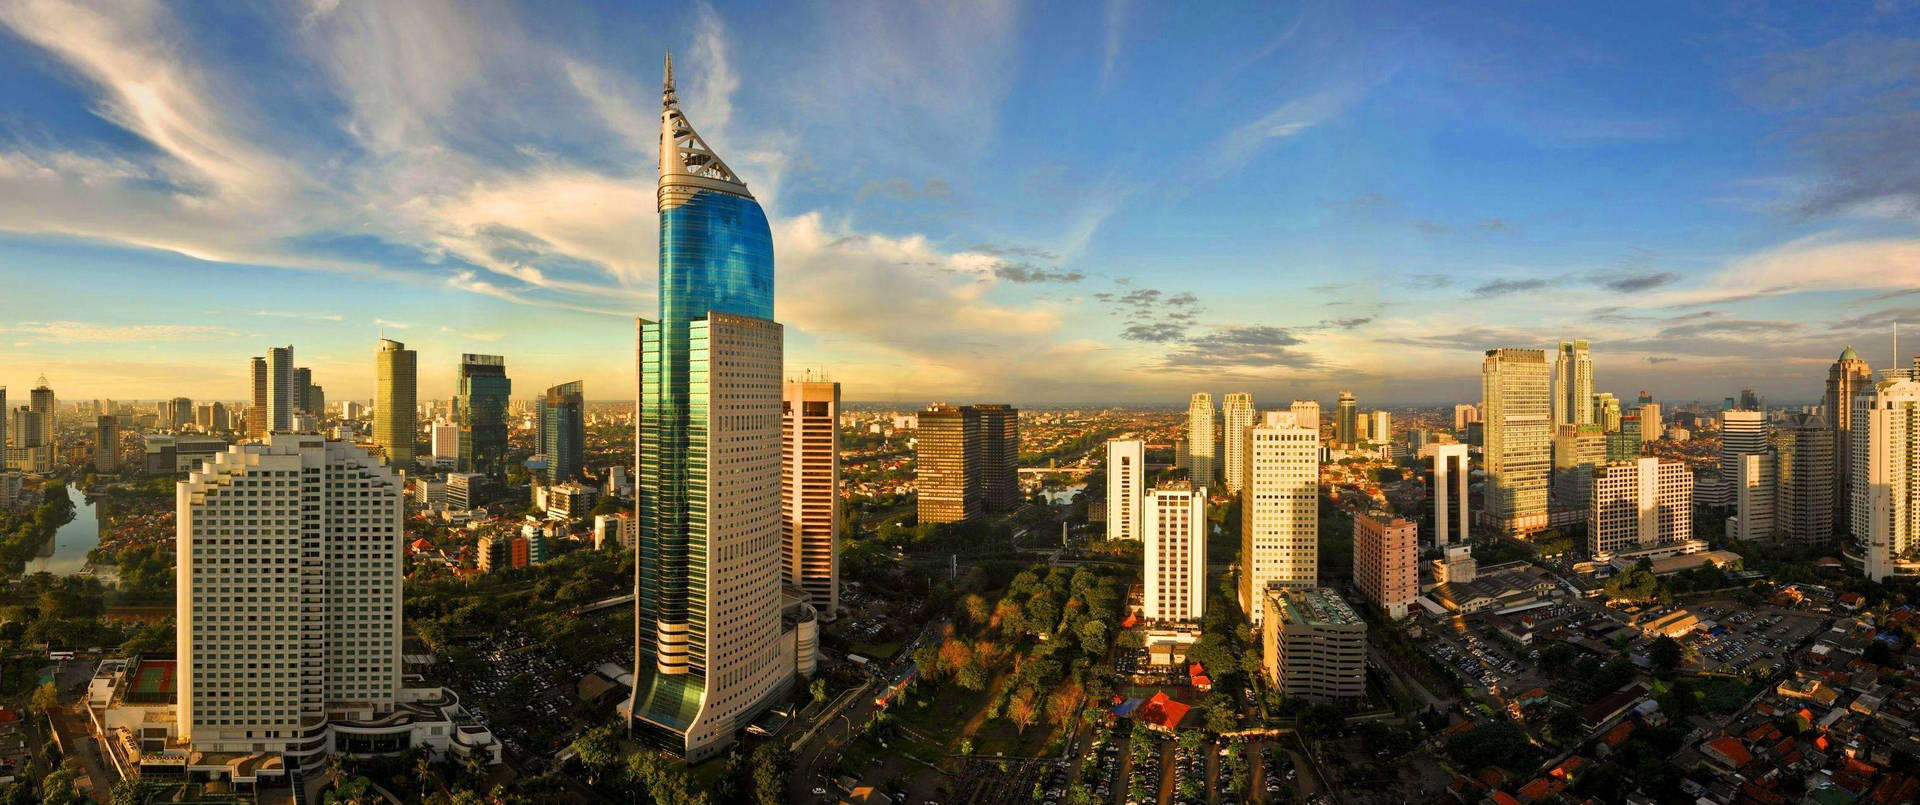 Jakarta Wisma 46